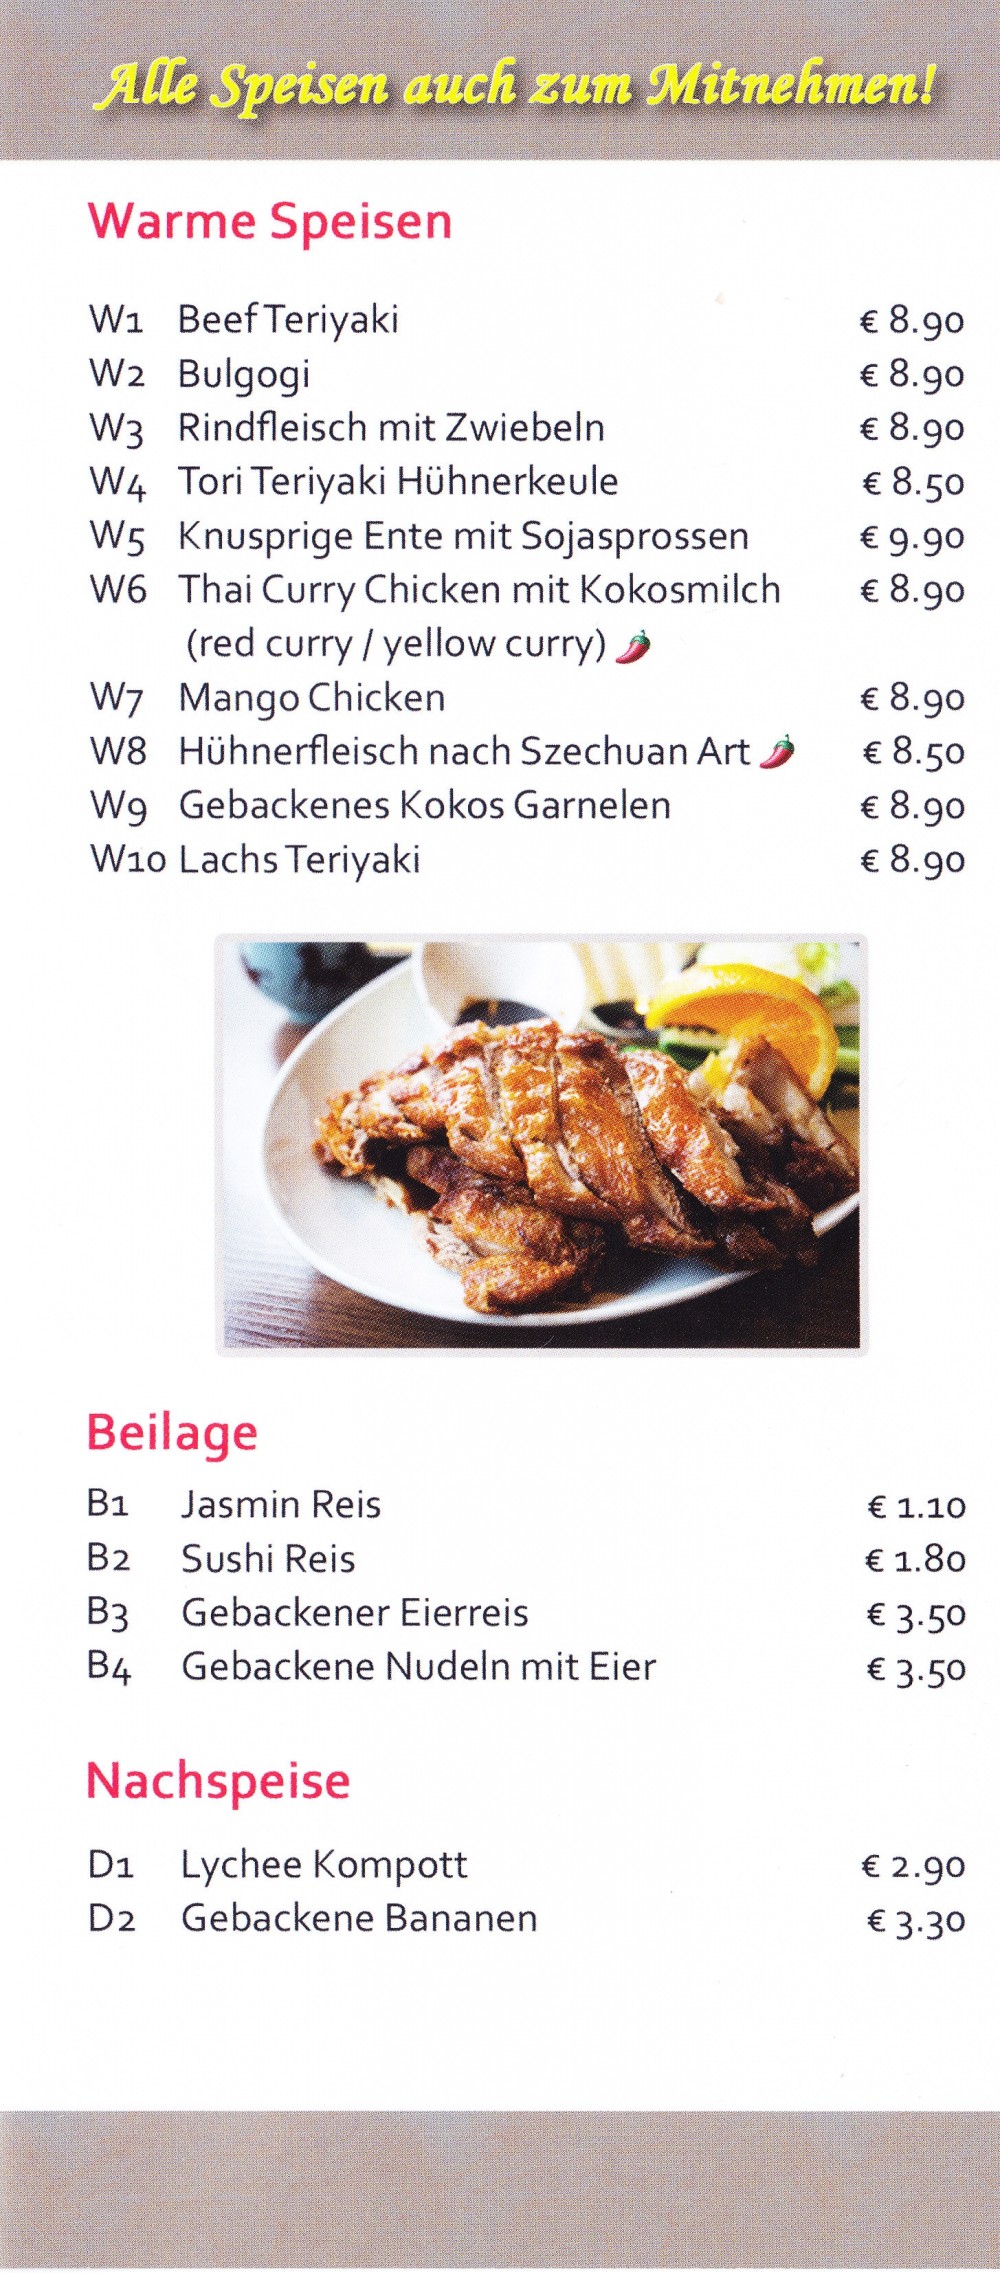 Mishi - Flyer Seite 04 - Mishi Asia Restaurant - Wien